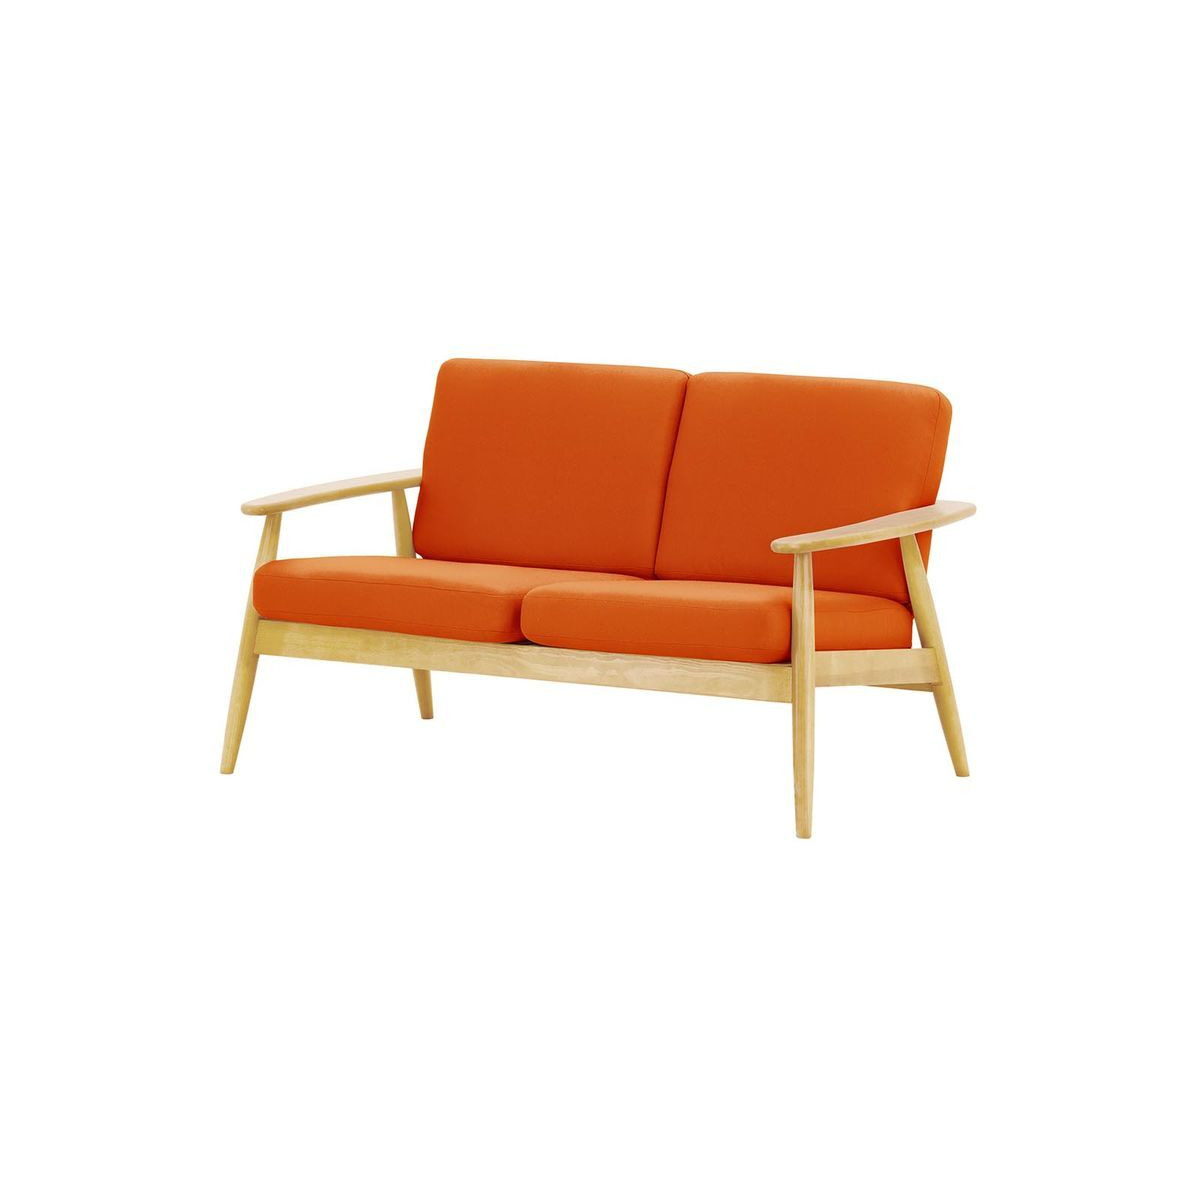 Demure Aqua 2 Seater Garden Sofa, orange, Leg colour: 8001 like oak - image 1